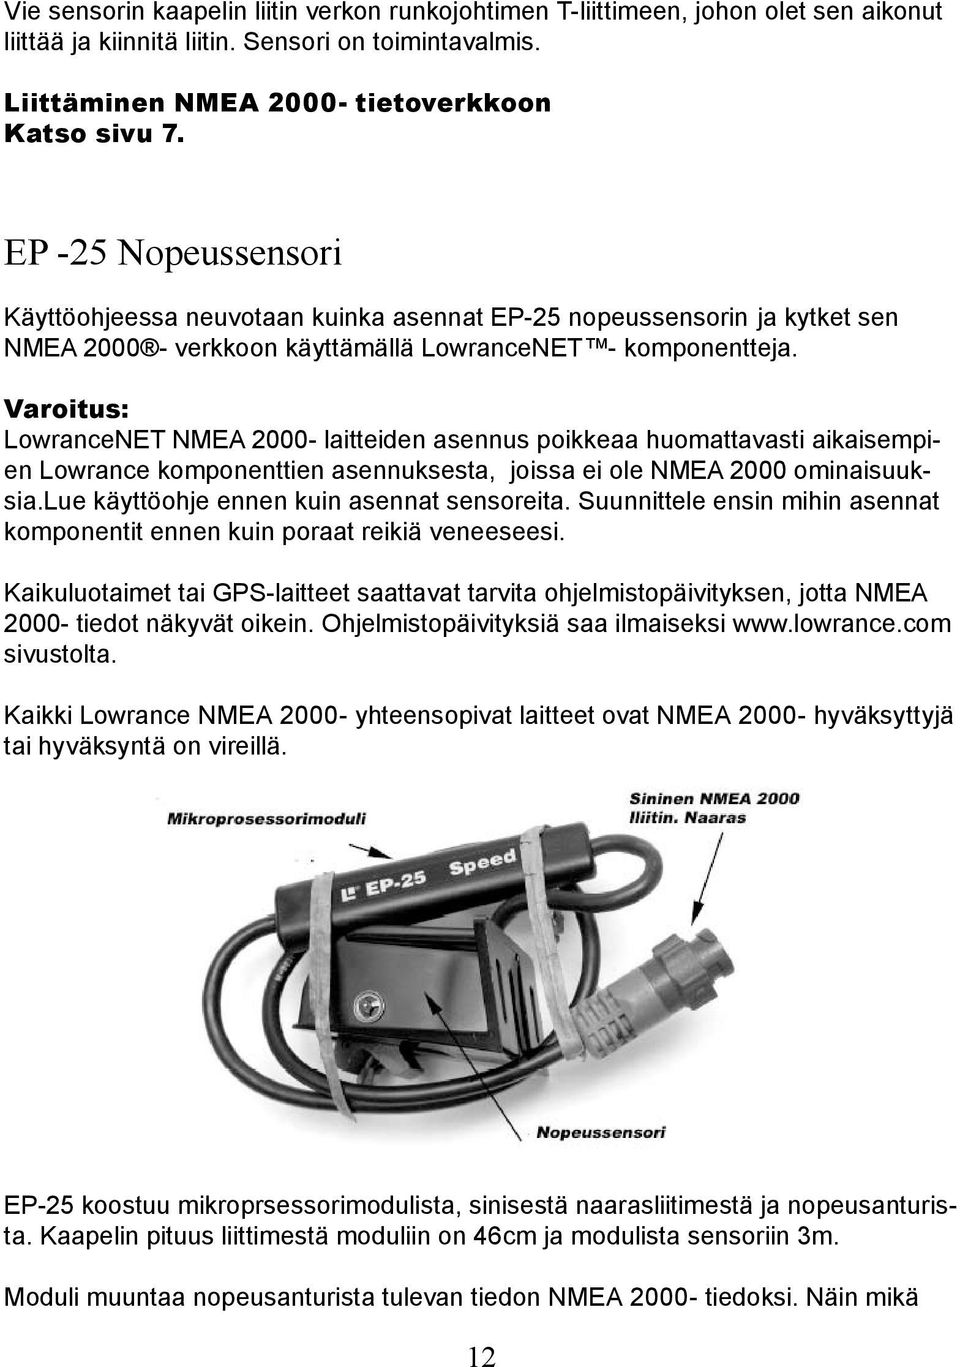 Varoitus: LowranceNET NMEA 2000- laitteiden asennus poikkeaa huomattavasti aikaisempien Lowrance komponenttien asennuksesta, joissa ei ole NMEA 2000 ominaisuuksia.